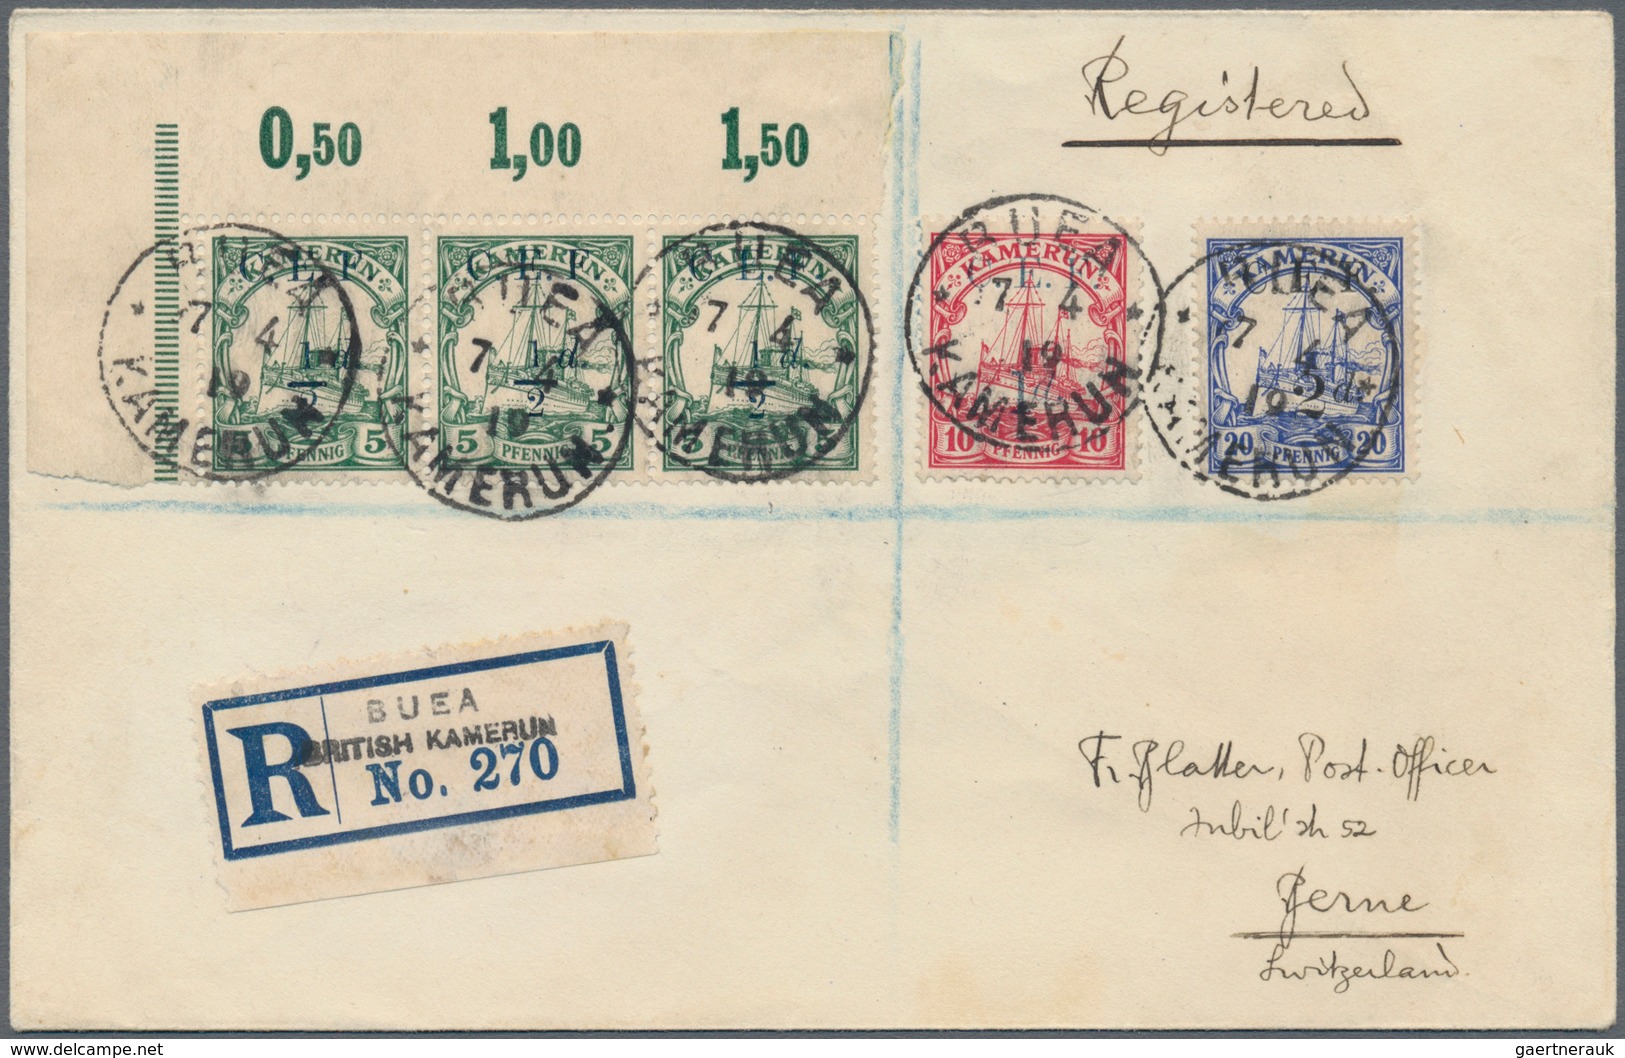 Deutsche Kolonien: 1895-1919, toller Posten mit 65 Briefen, Belegen und Ganzsachen, dabei bessere St